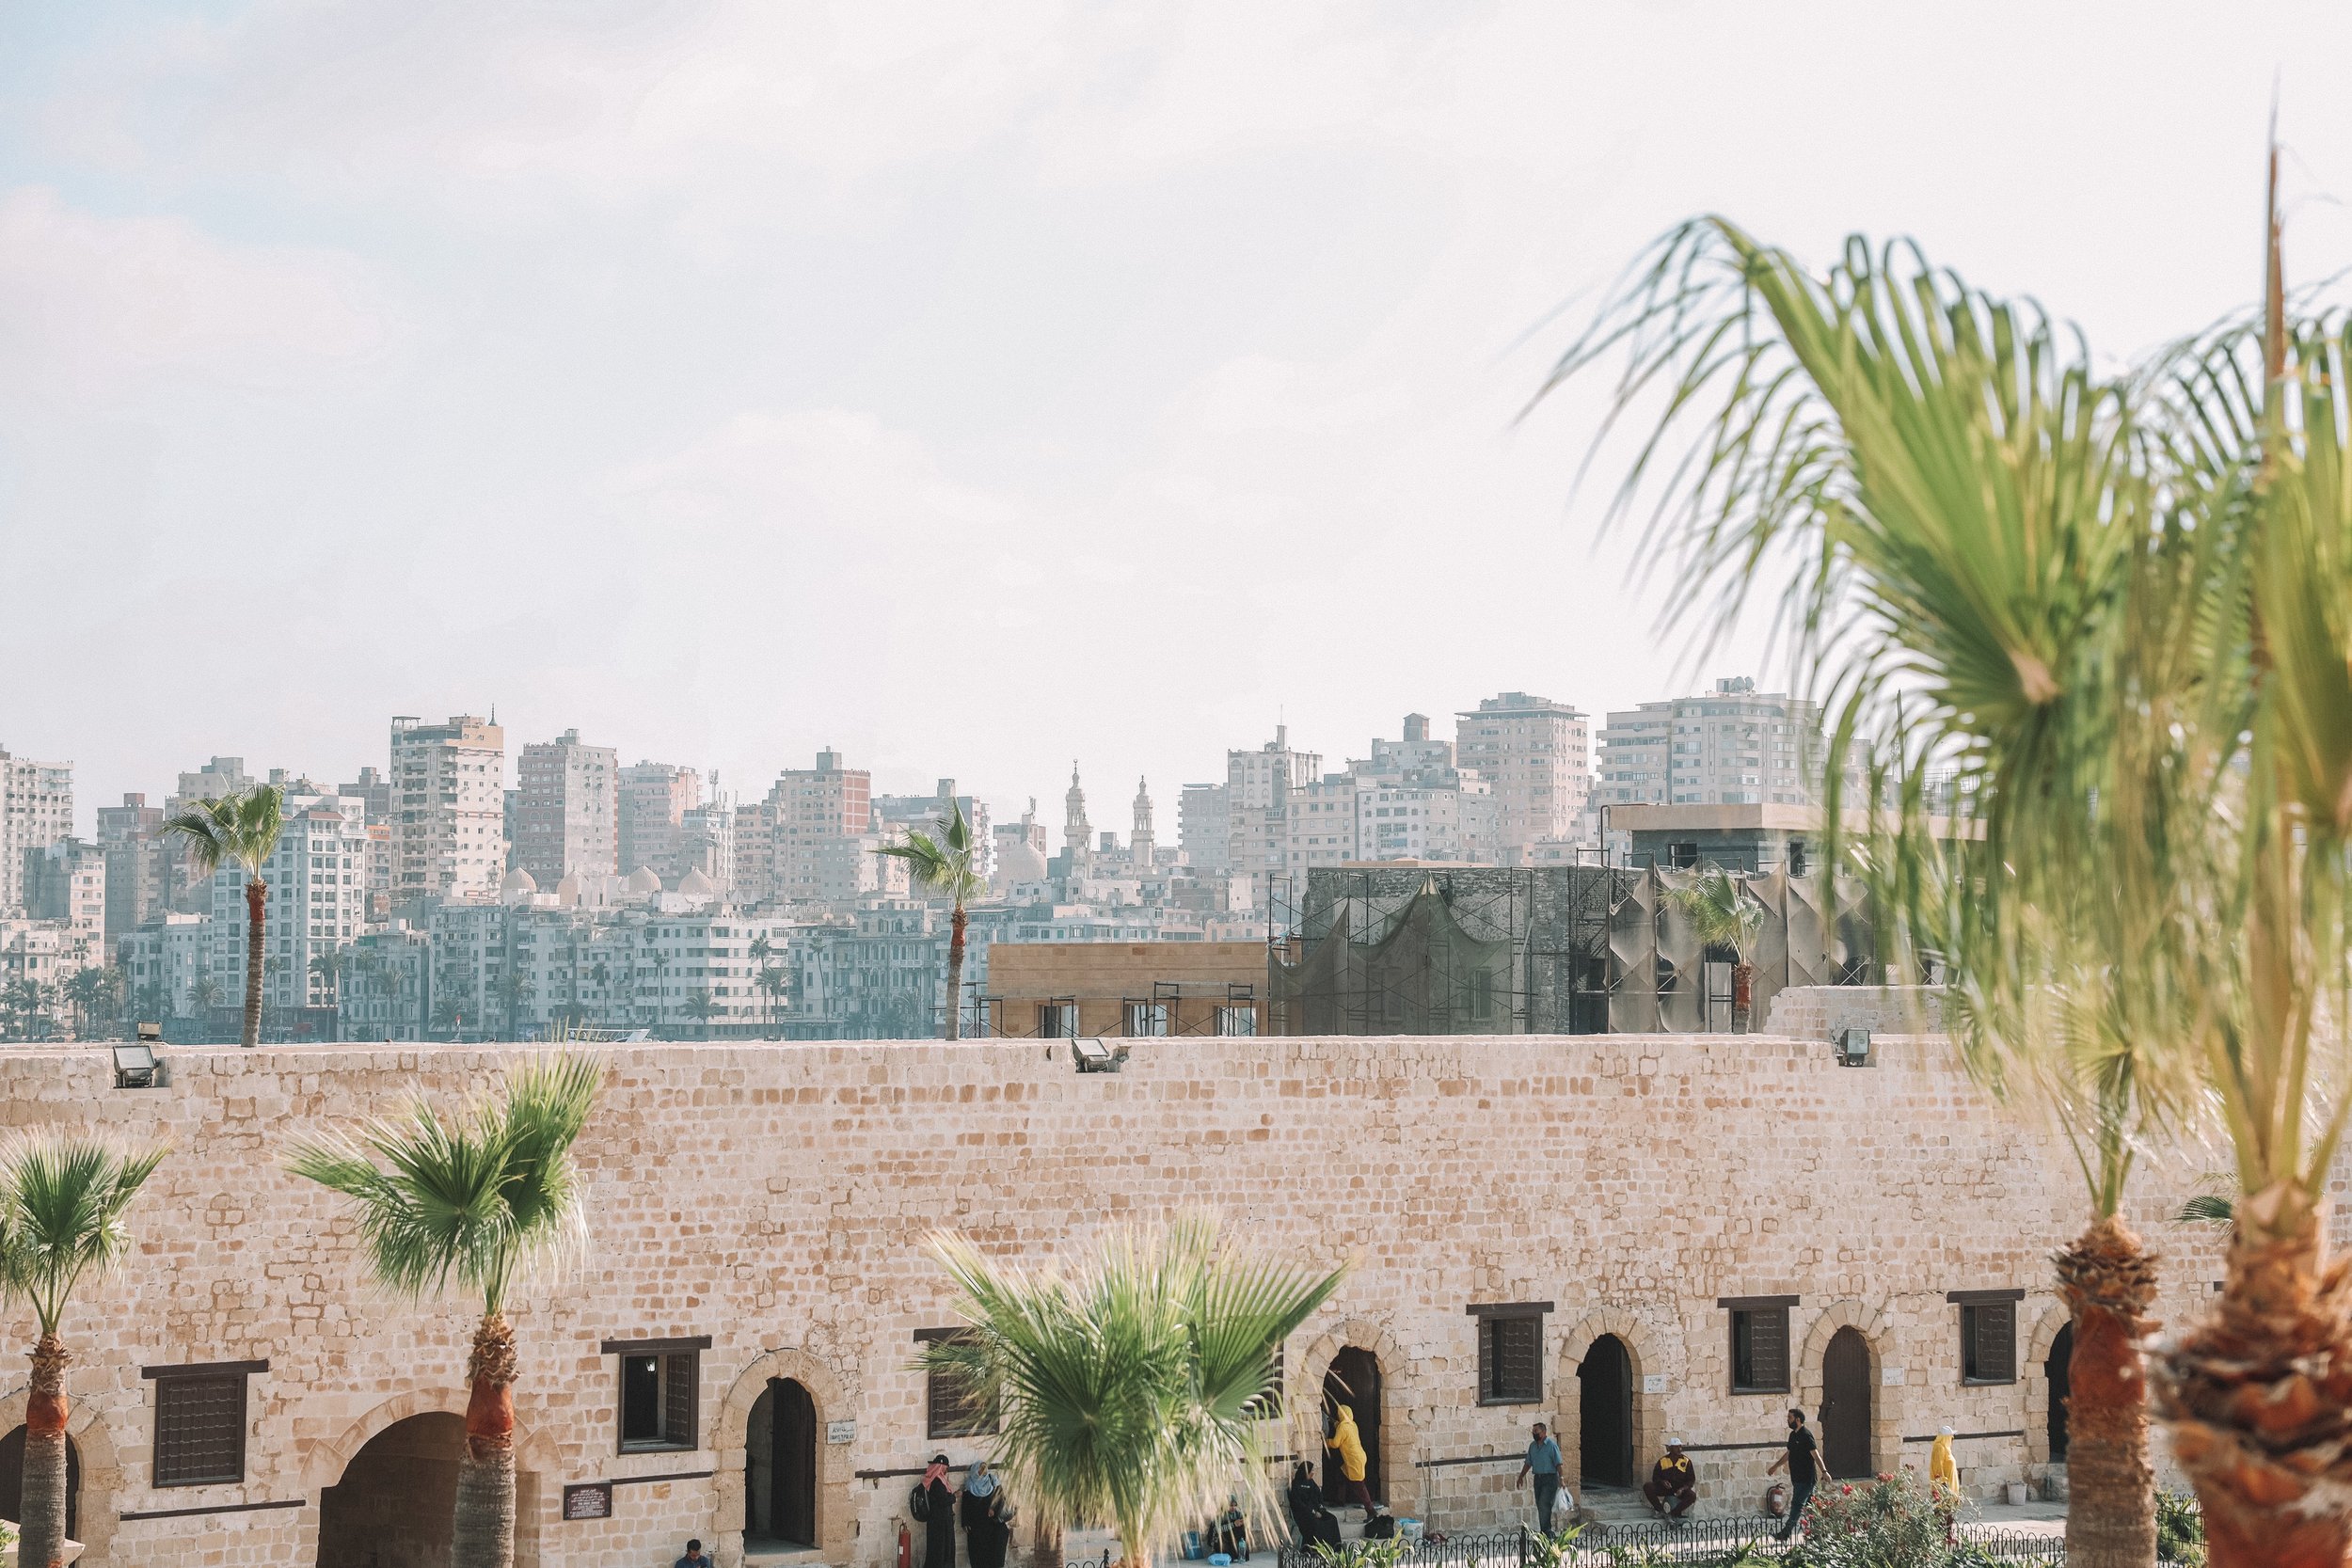 City and palm trees - Citadel of Qaitbay - Alexandria - Egypt